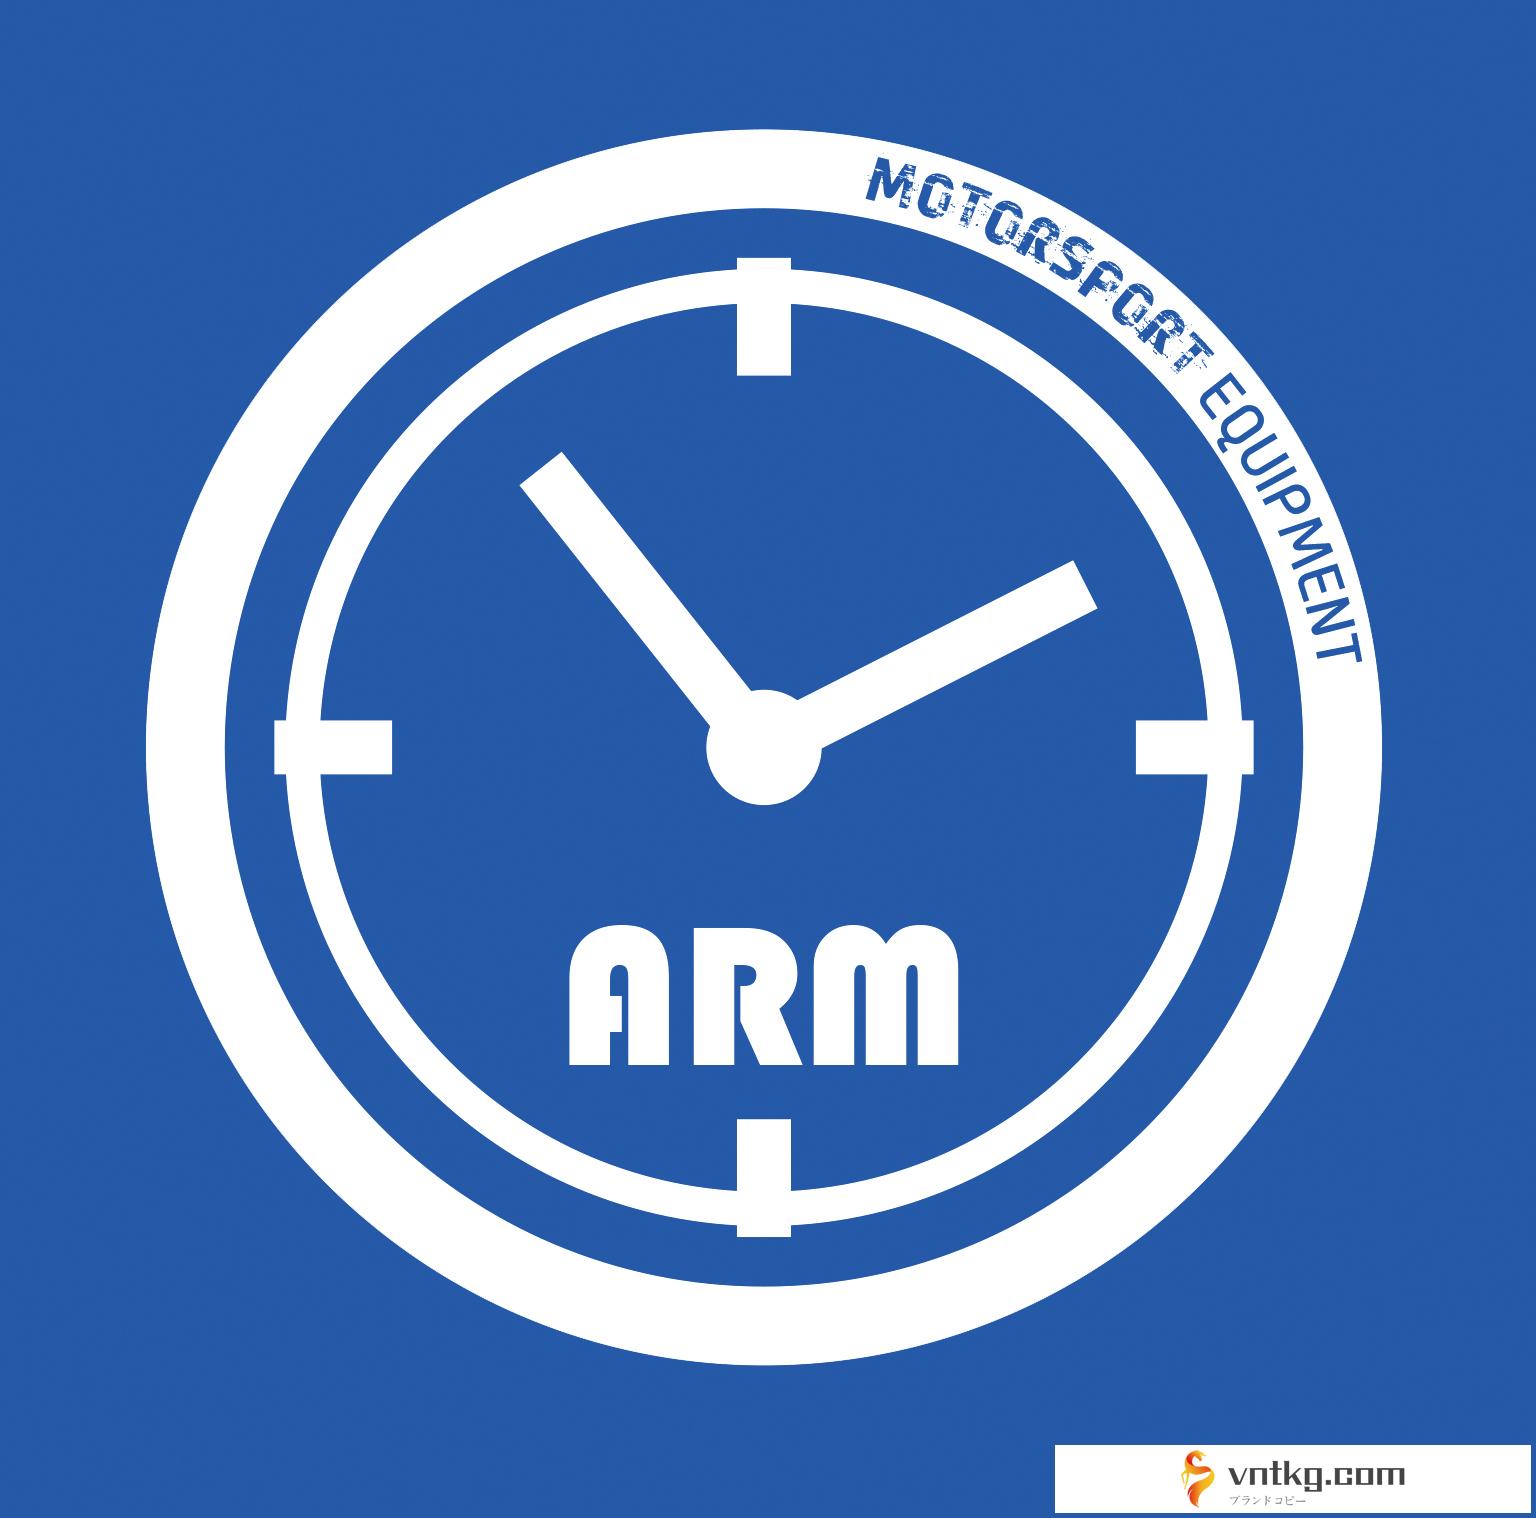 ARM products 3Dプリントショップ